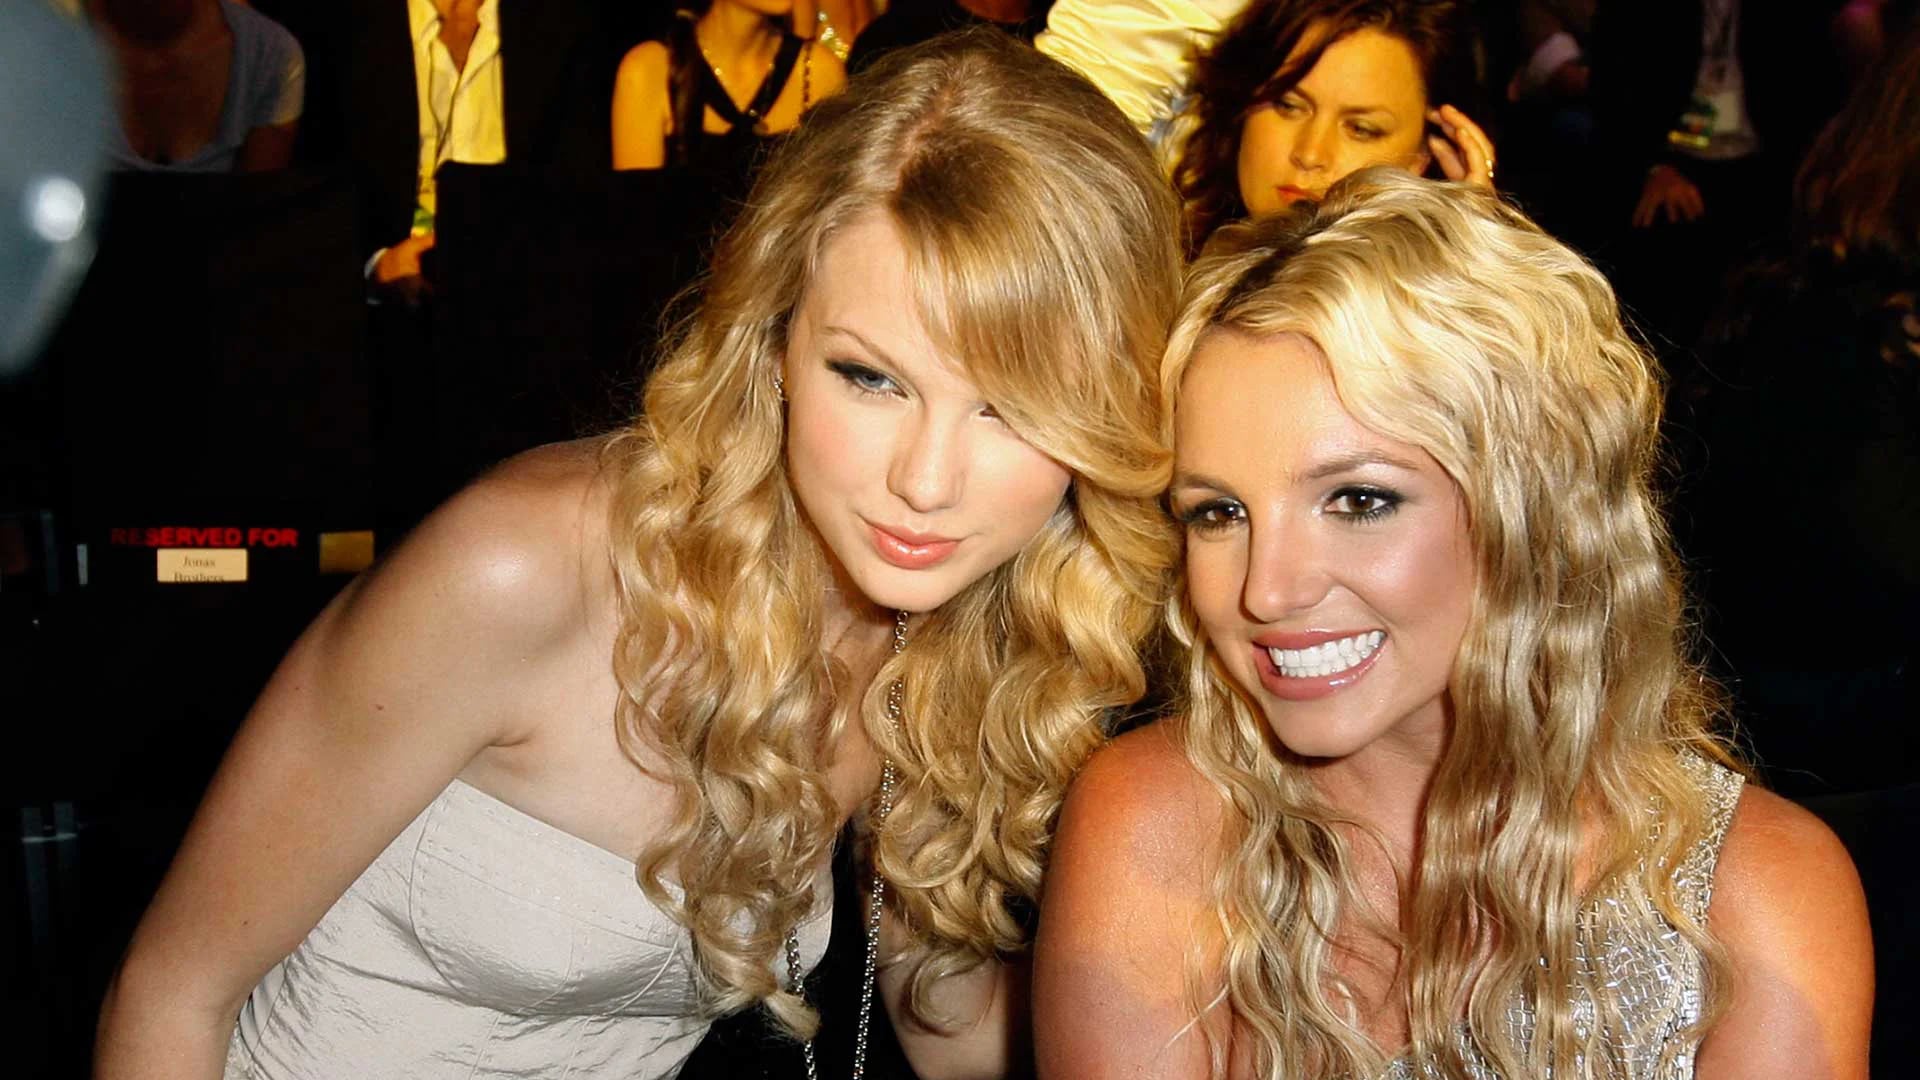 La foto que deja en evidencia que Britney Spears “olvidó” que conoce a Taylor Swift